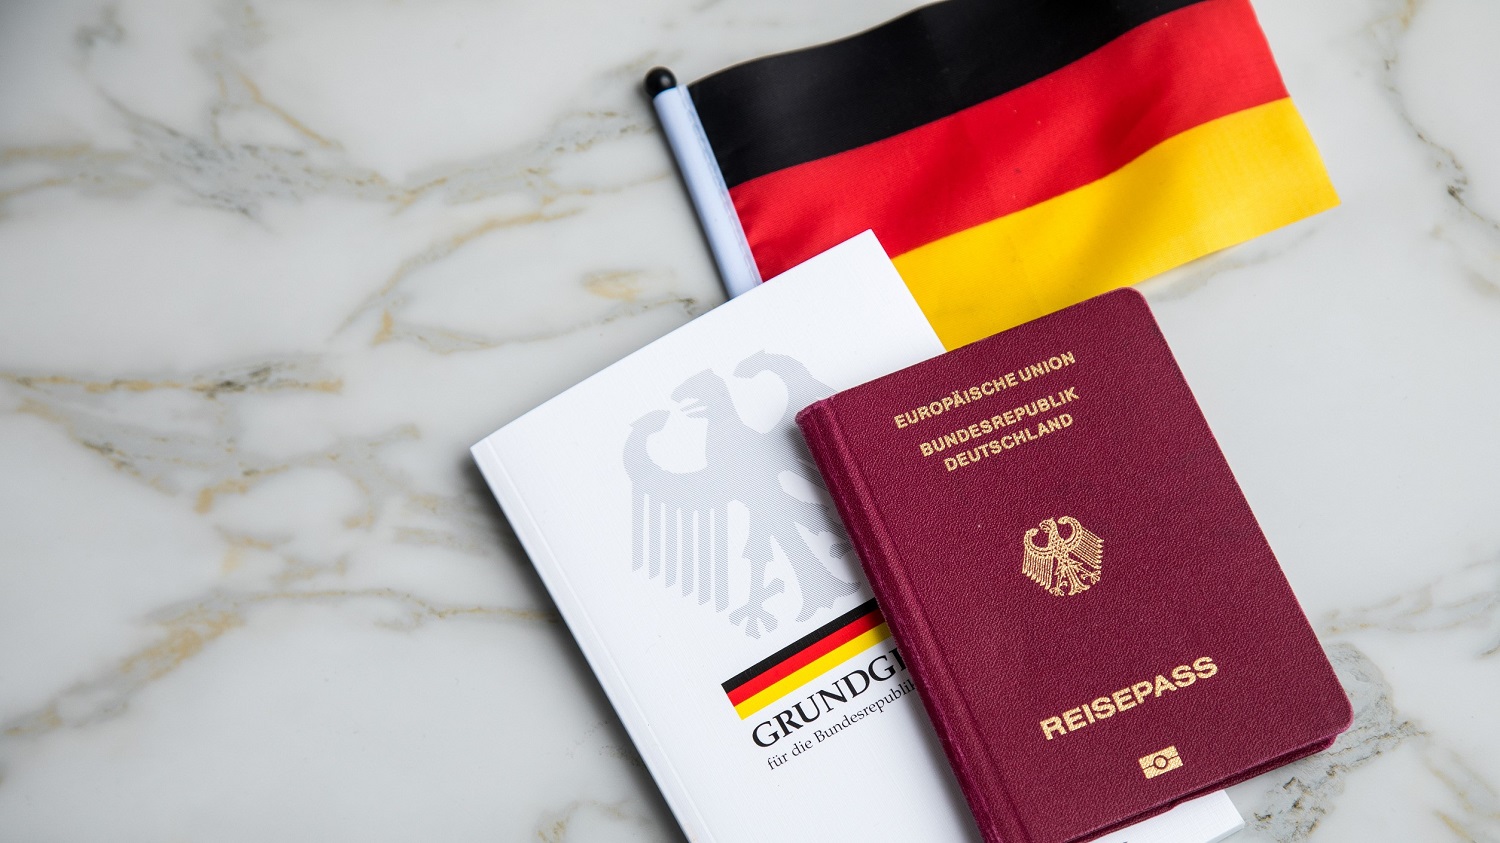 Verpönter Patriotismus und moralische Überheblichkeit: Deutschlands Zusammenhalt zerbröselt